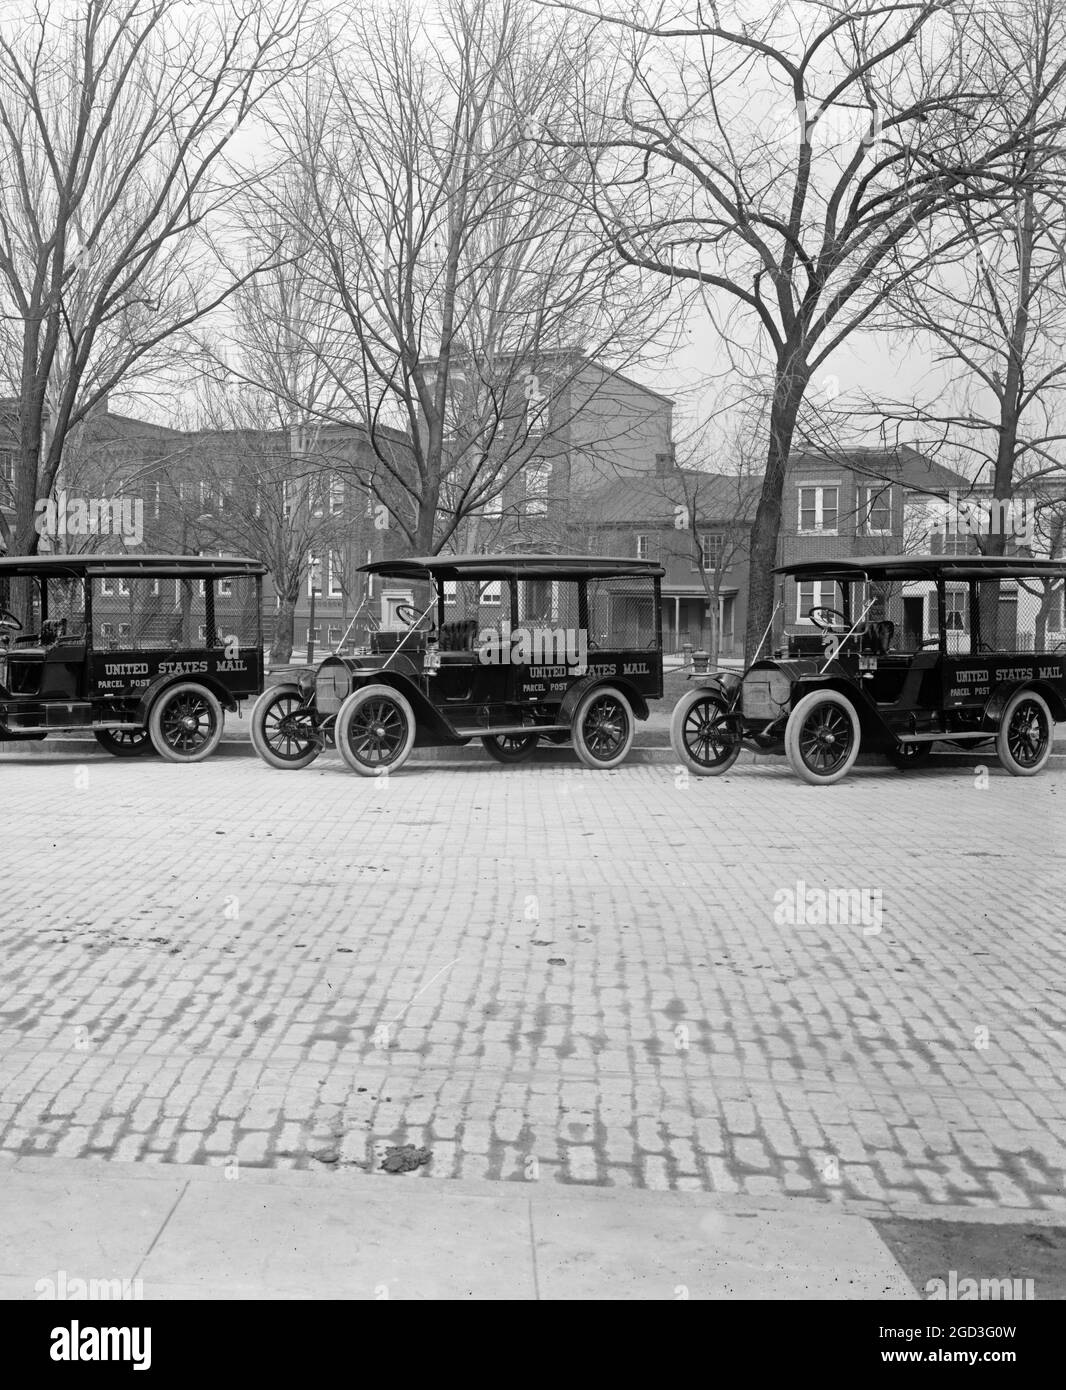 Les camions postaux américains sont situés entre 1910 et 1935 Banque D'Images